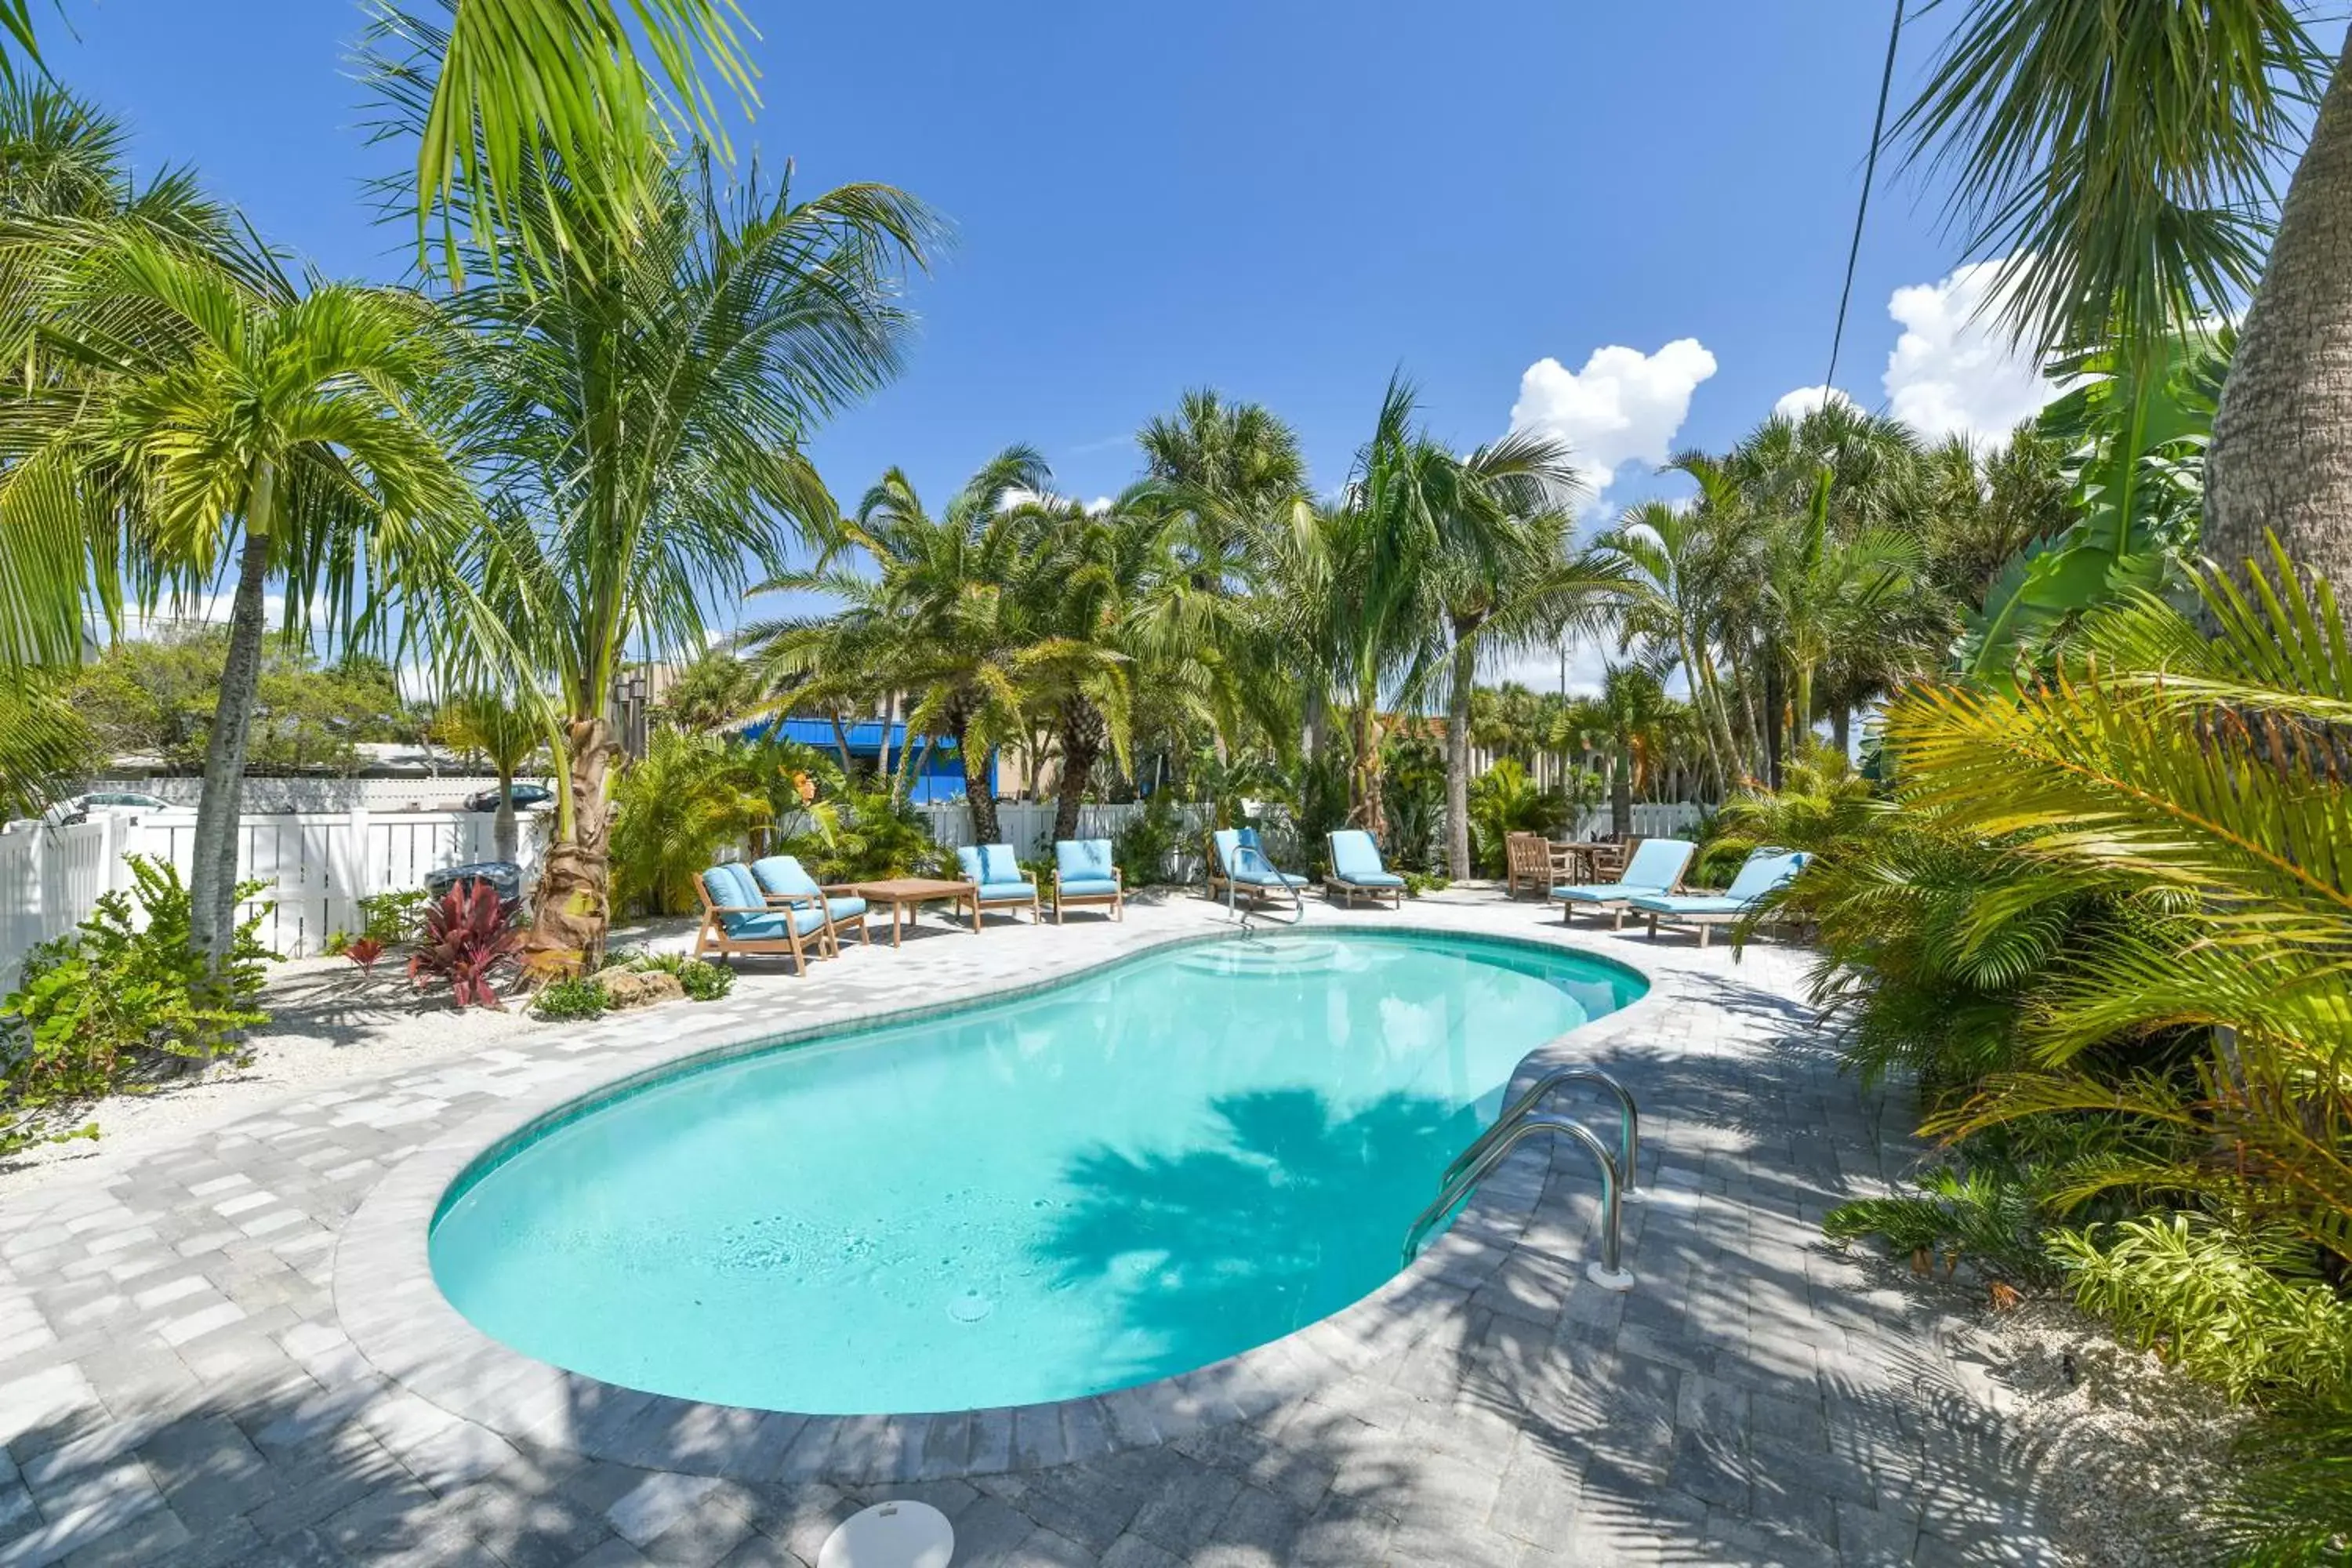 Swimming Pool in Tropical Breeze Resort